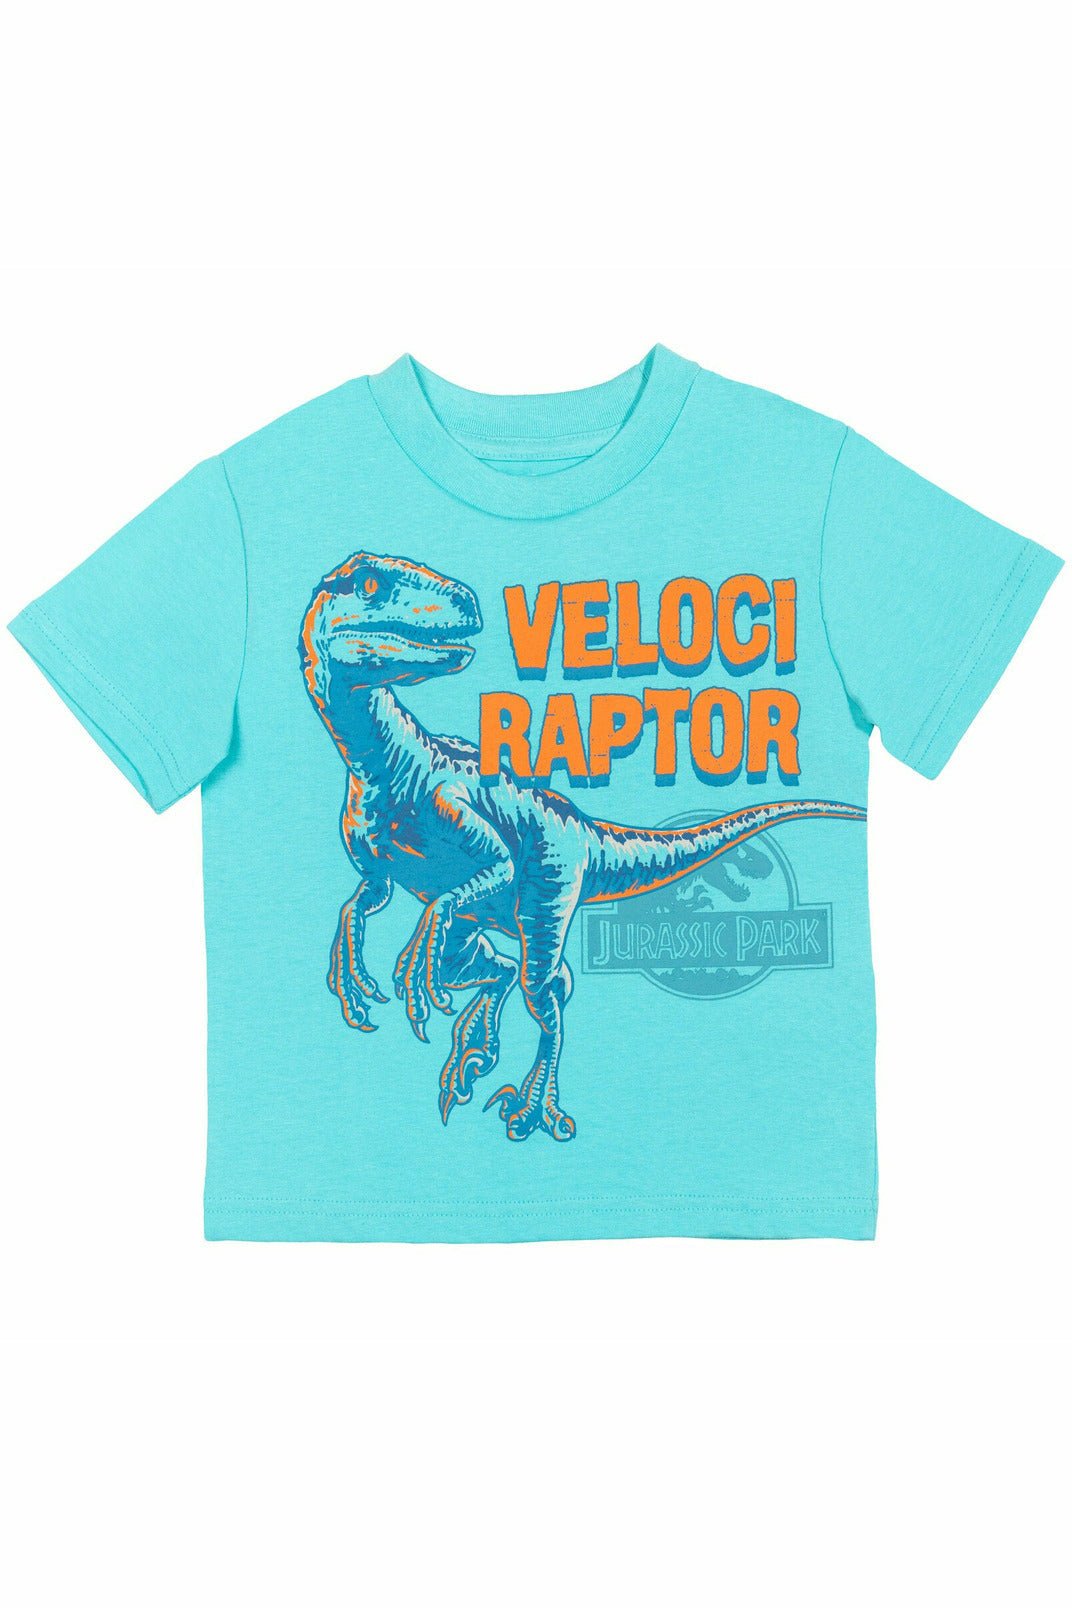 Jurassic World 4 Pack Graphic T-Shirt - imagikids